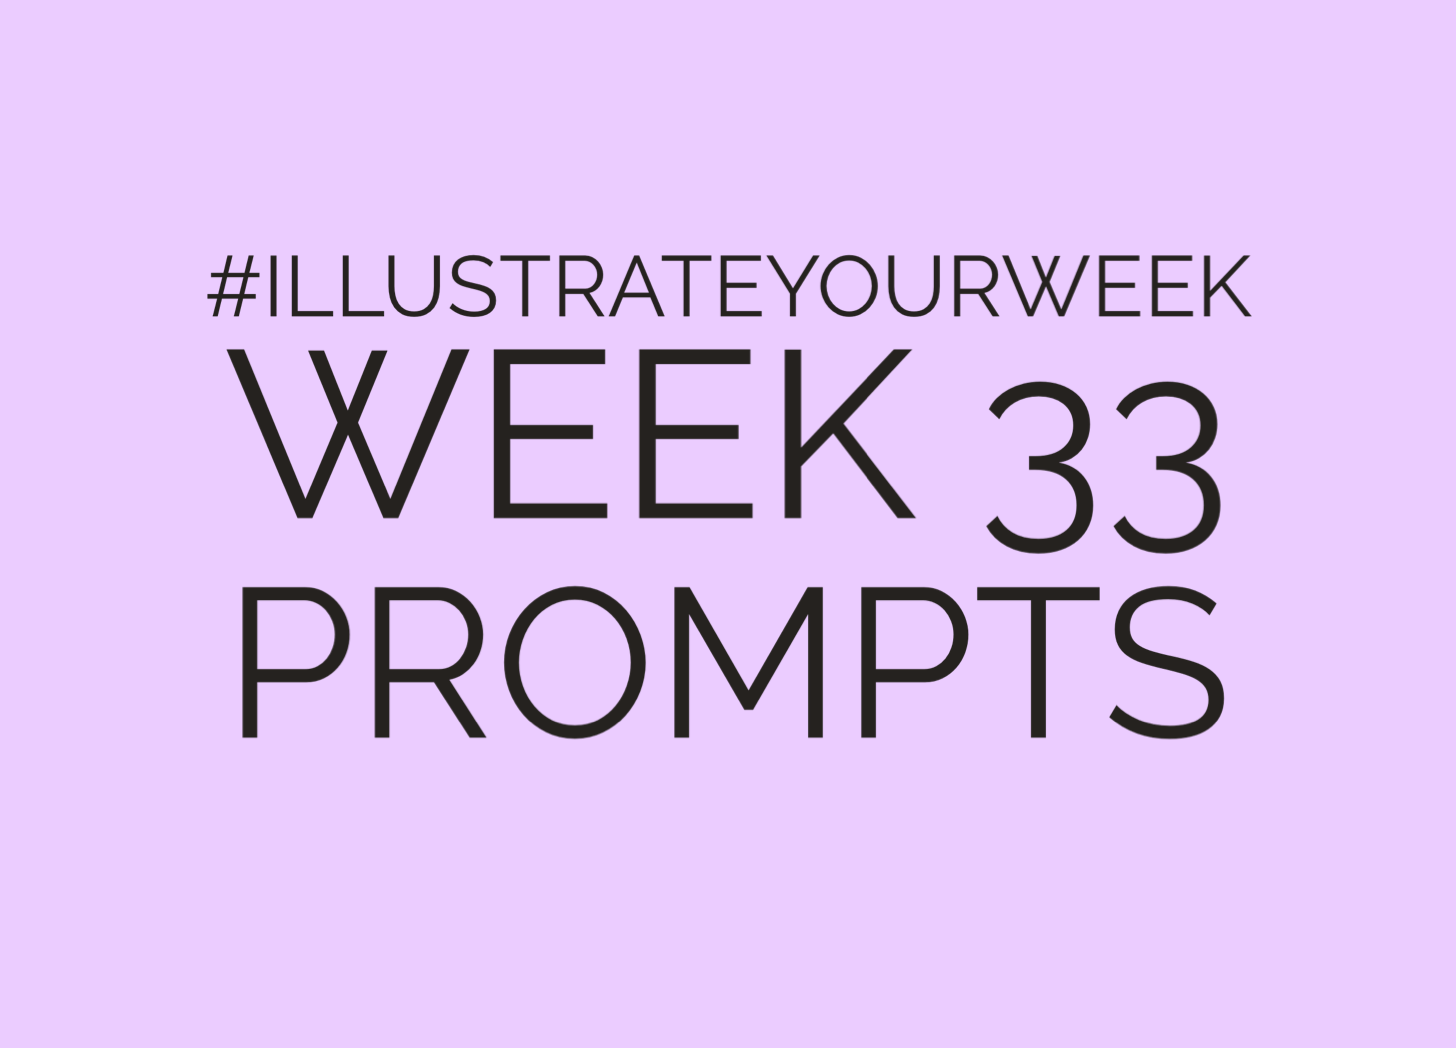 Week 33 Illustrate Your Week (heading)